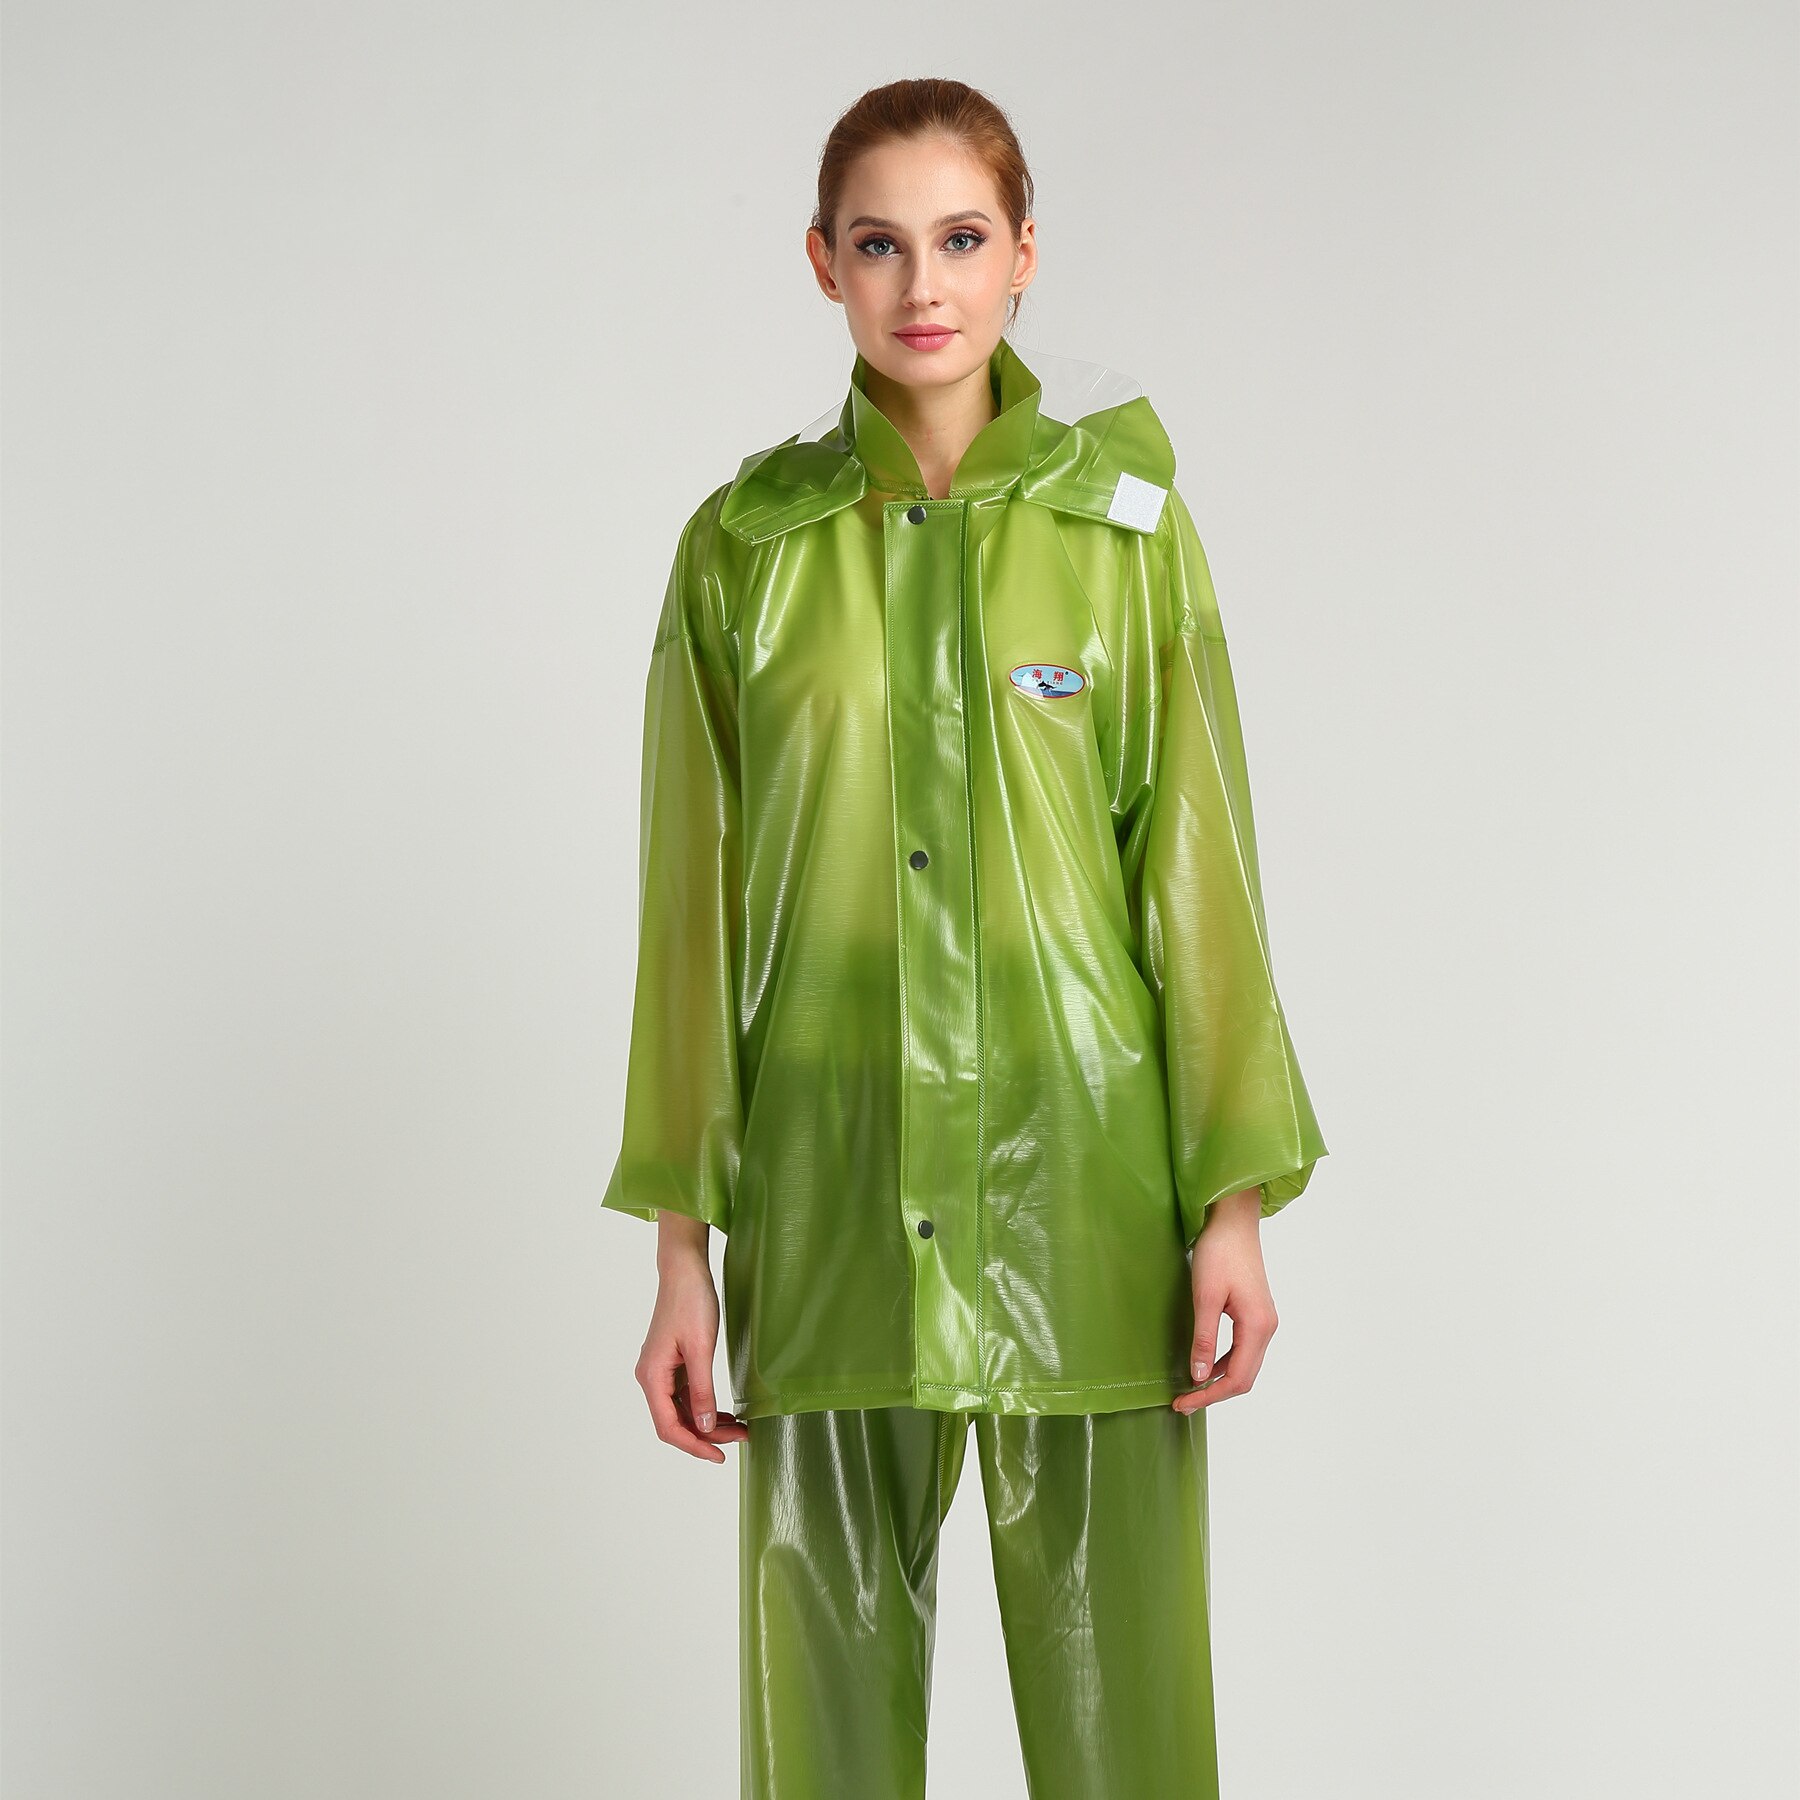 Vandtæt pvc regnfrakke til kvinder regnbukser mænd tynd regntøj på udendørs voksen split regnfrakke  yy071: Grøn / Xxl